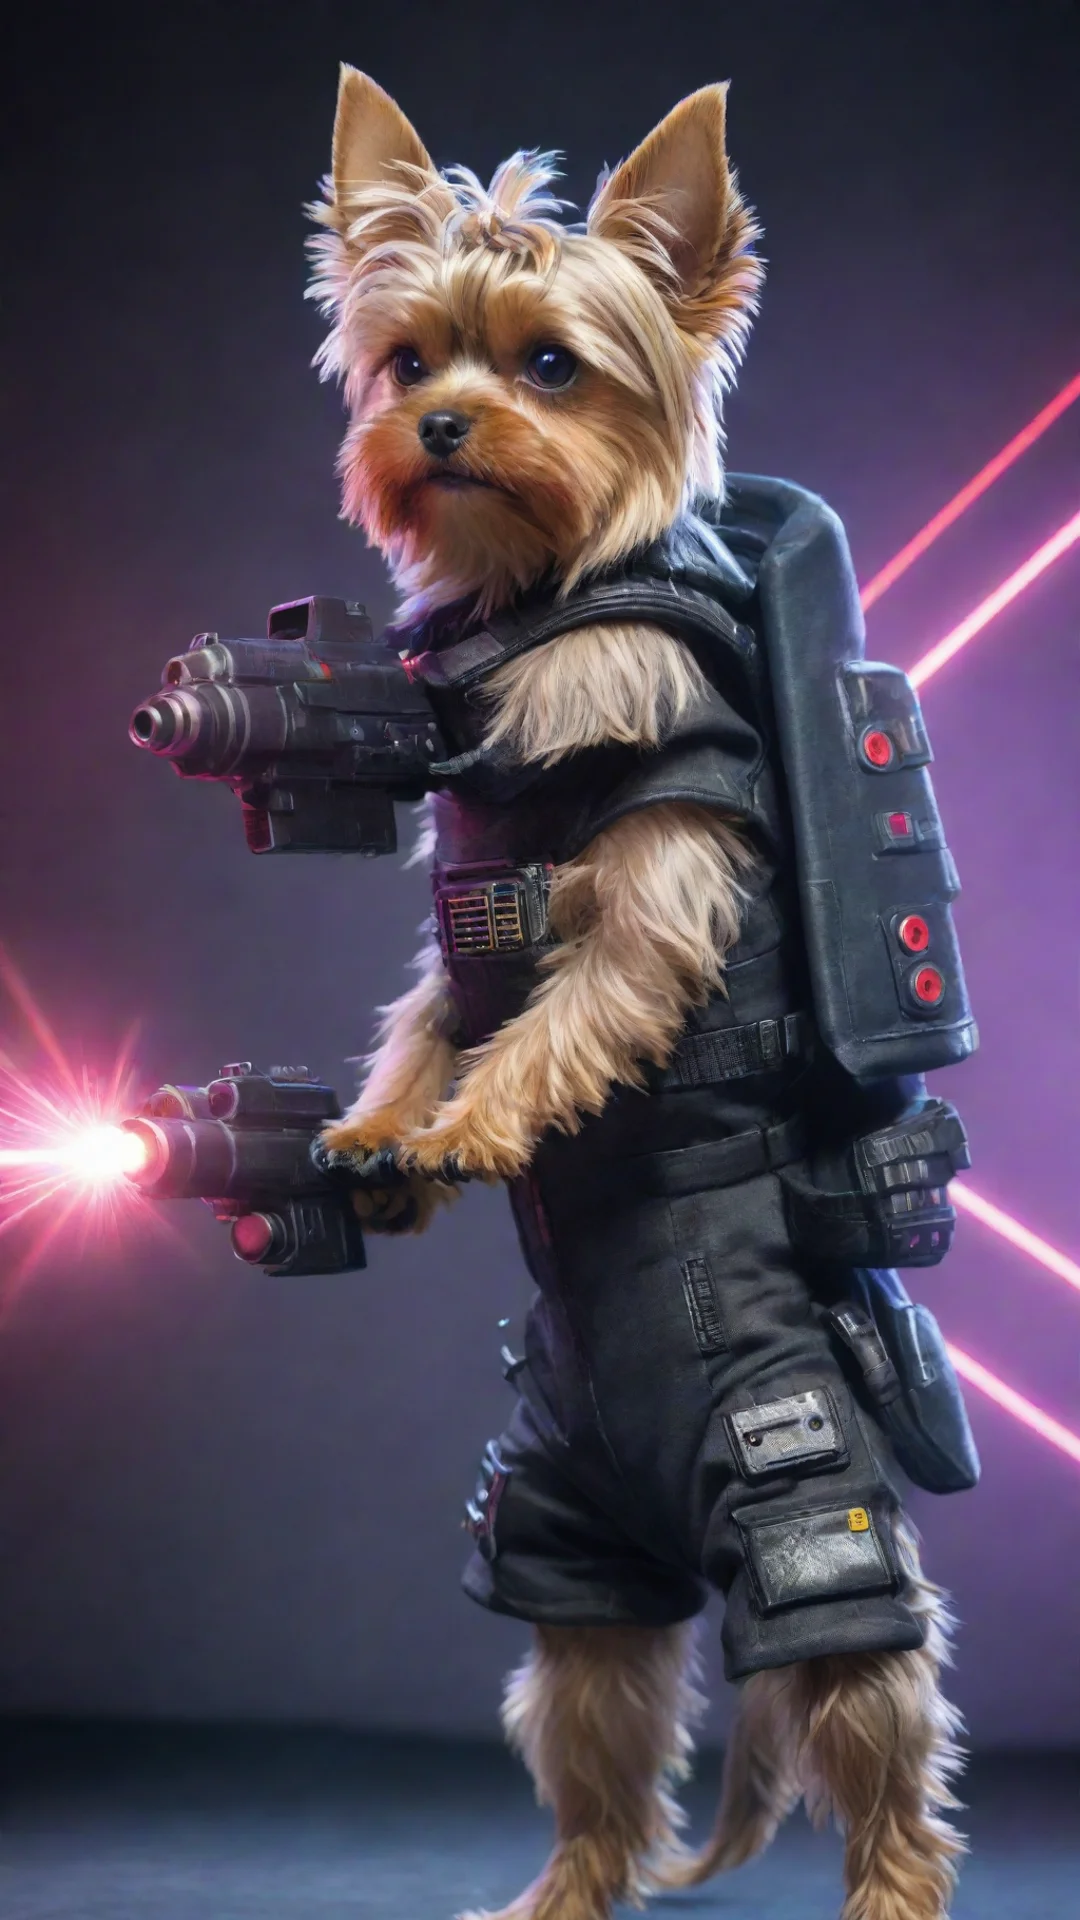 yorkshire terrier in a cyberpunk space suit firing a laser gun tall